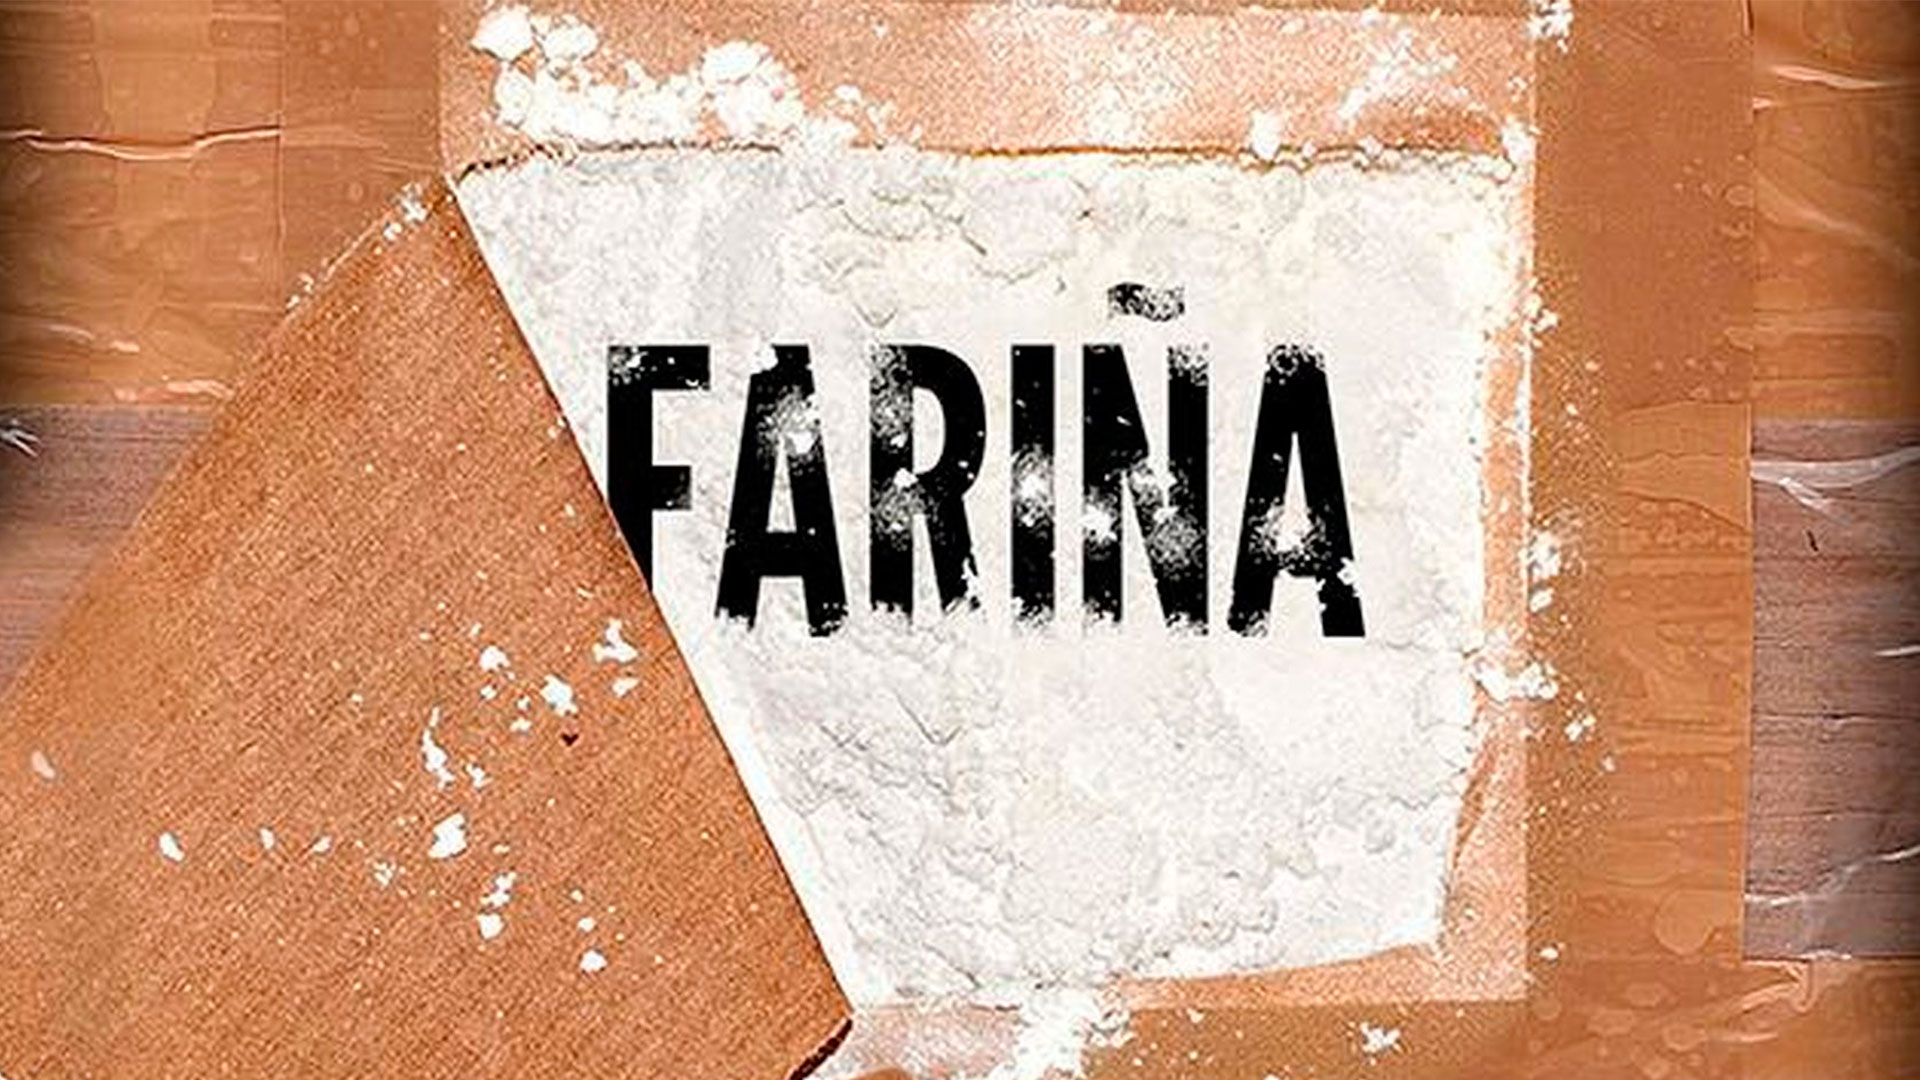 Nacho Carretero considera desproporcionado el secuestro de su obra Fariña